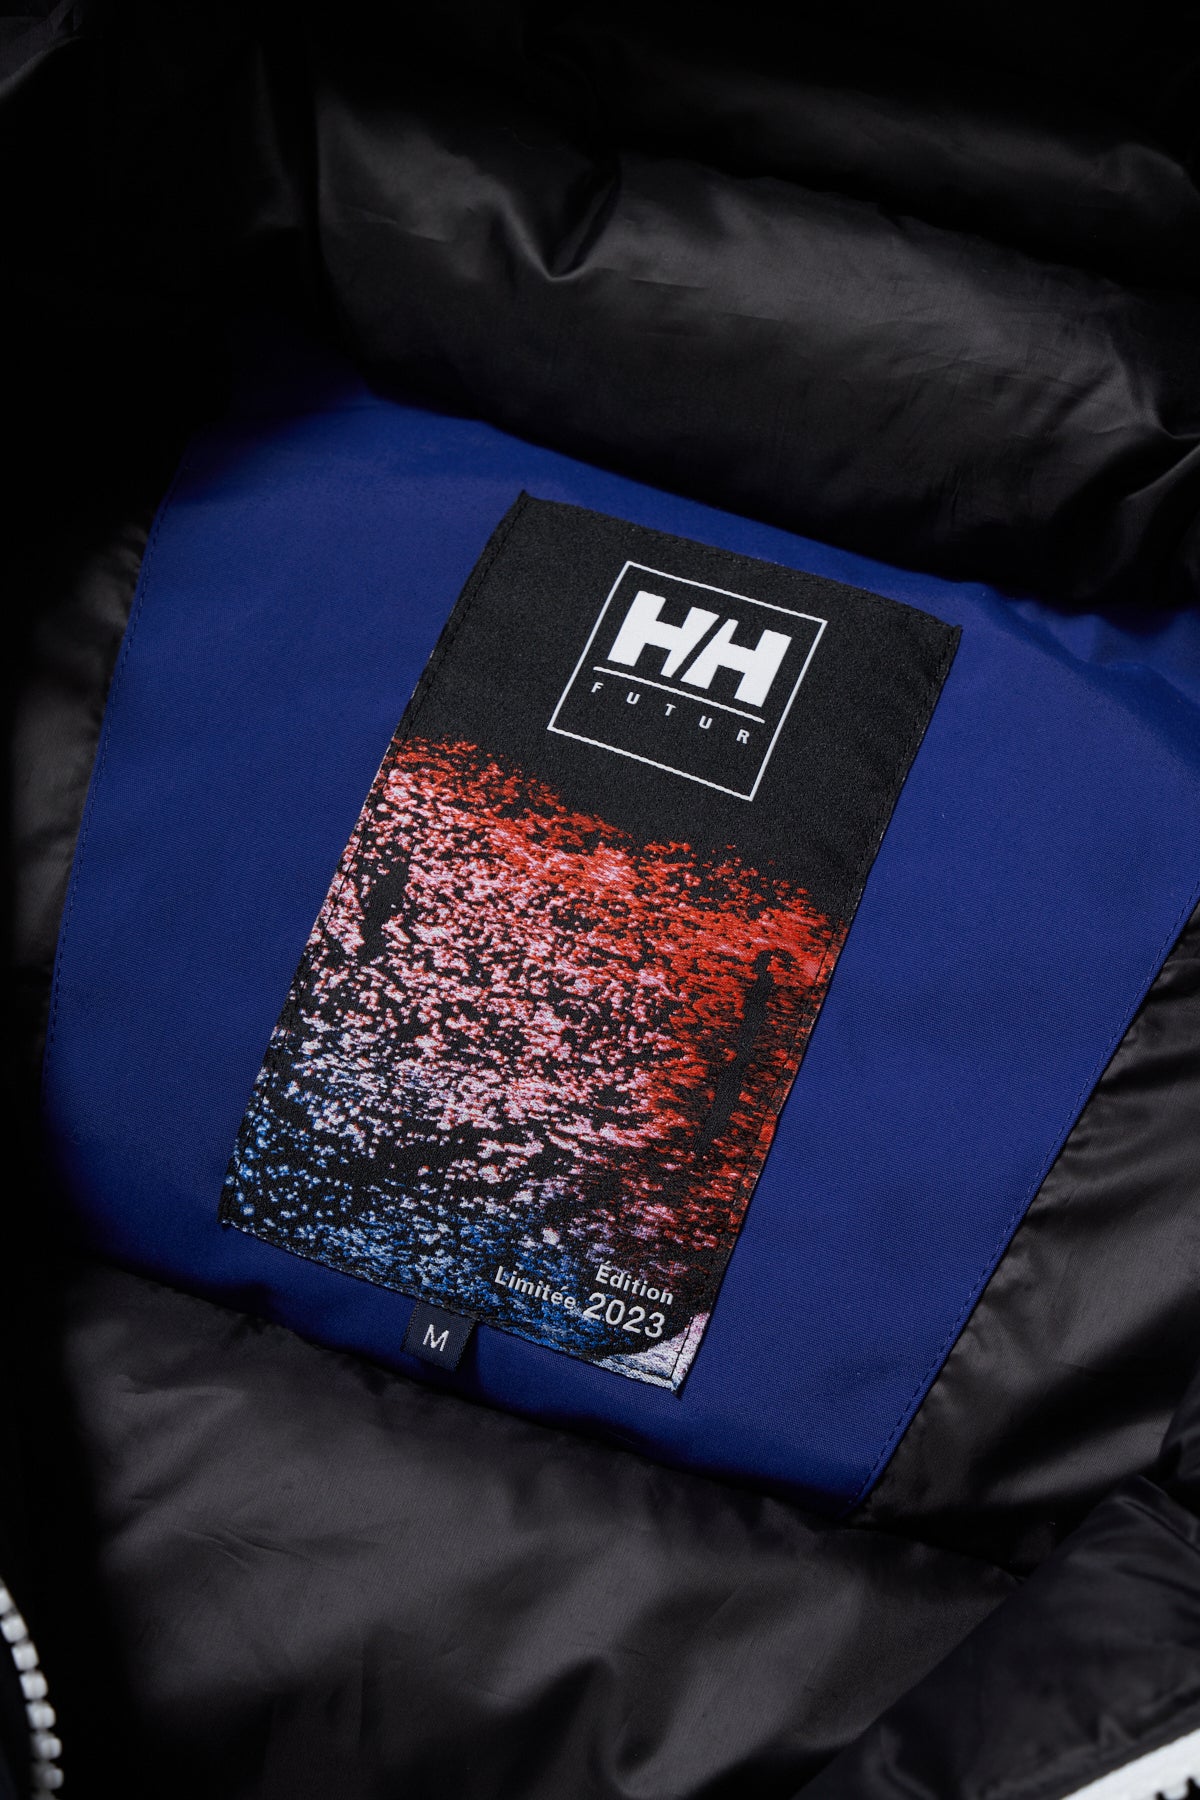 FUTUR × HH / Ocean Balder Insulation Jacket